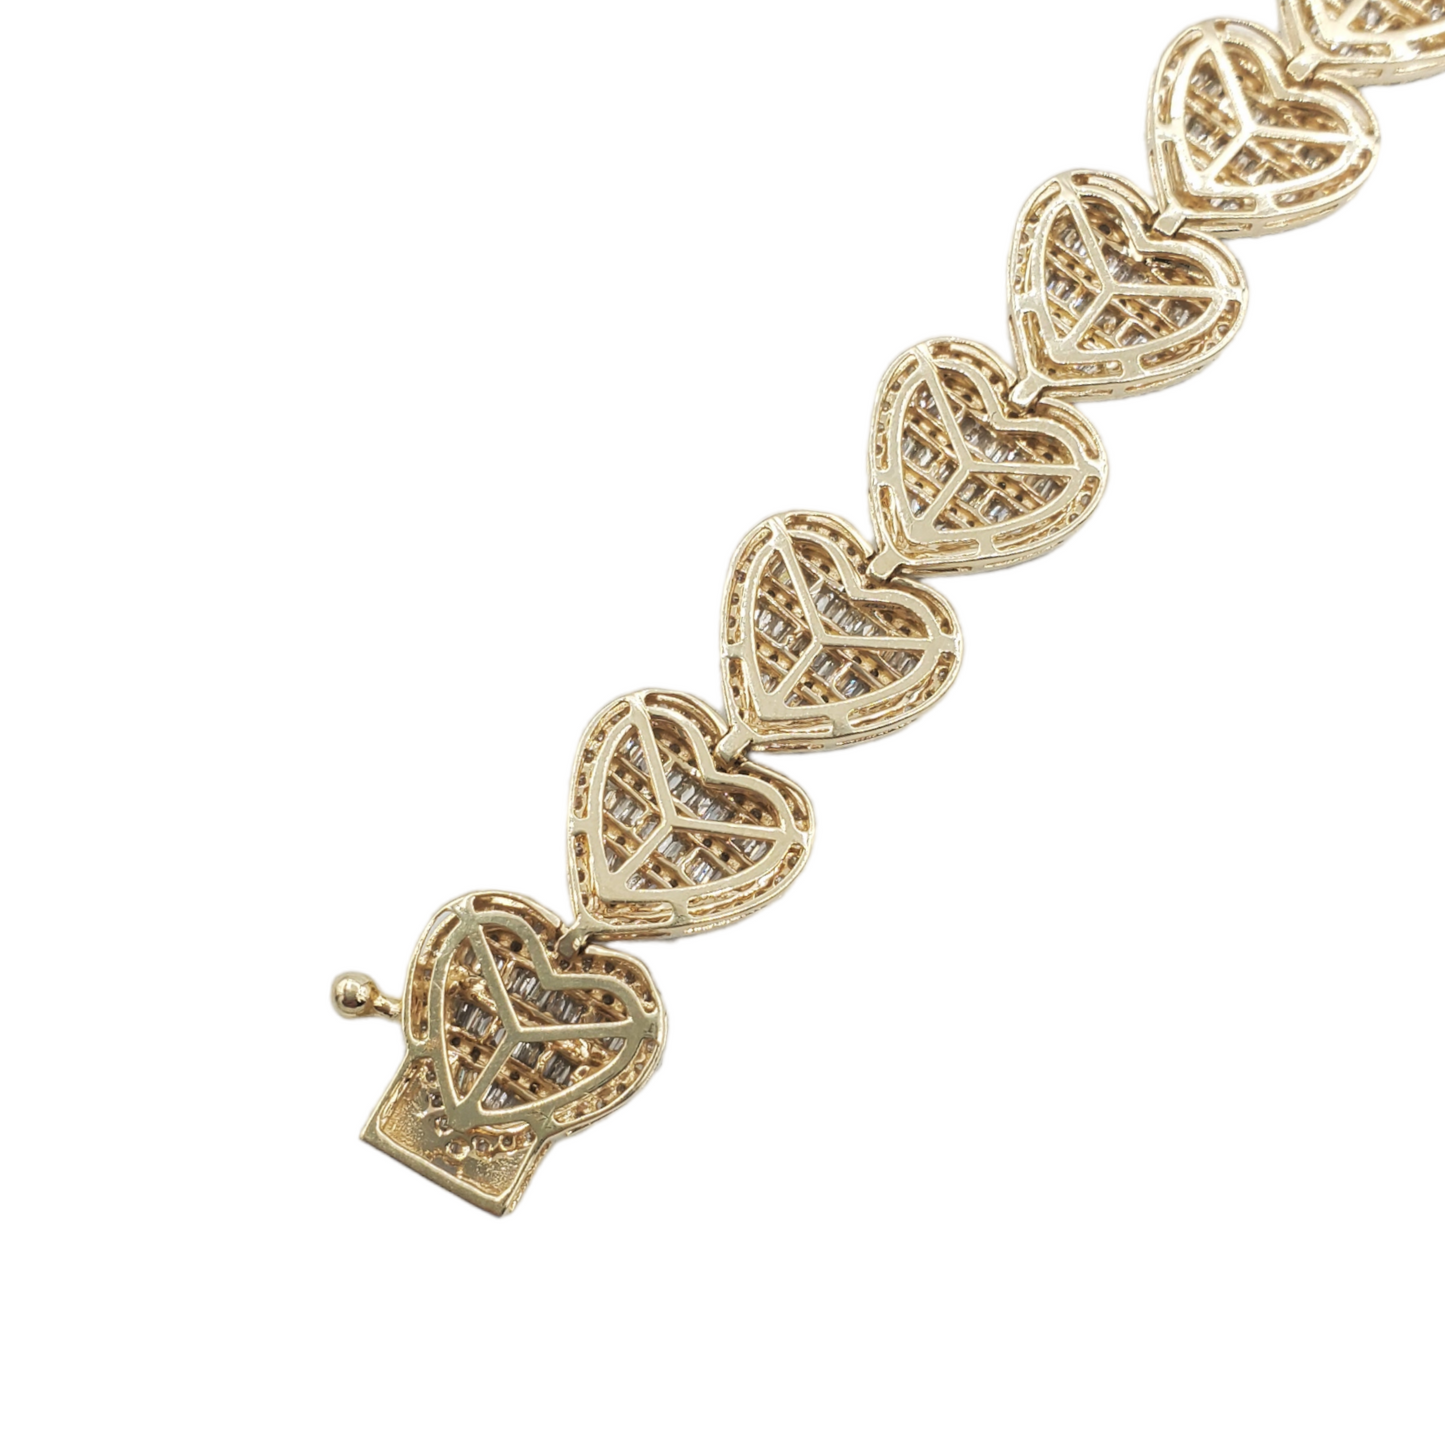 14k Baguette Diamond Heart Bracelet #26121